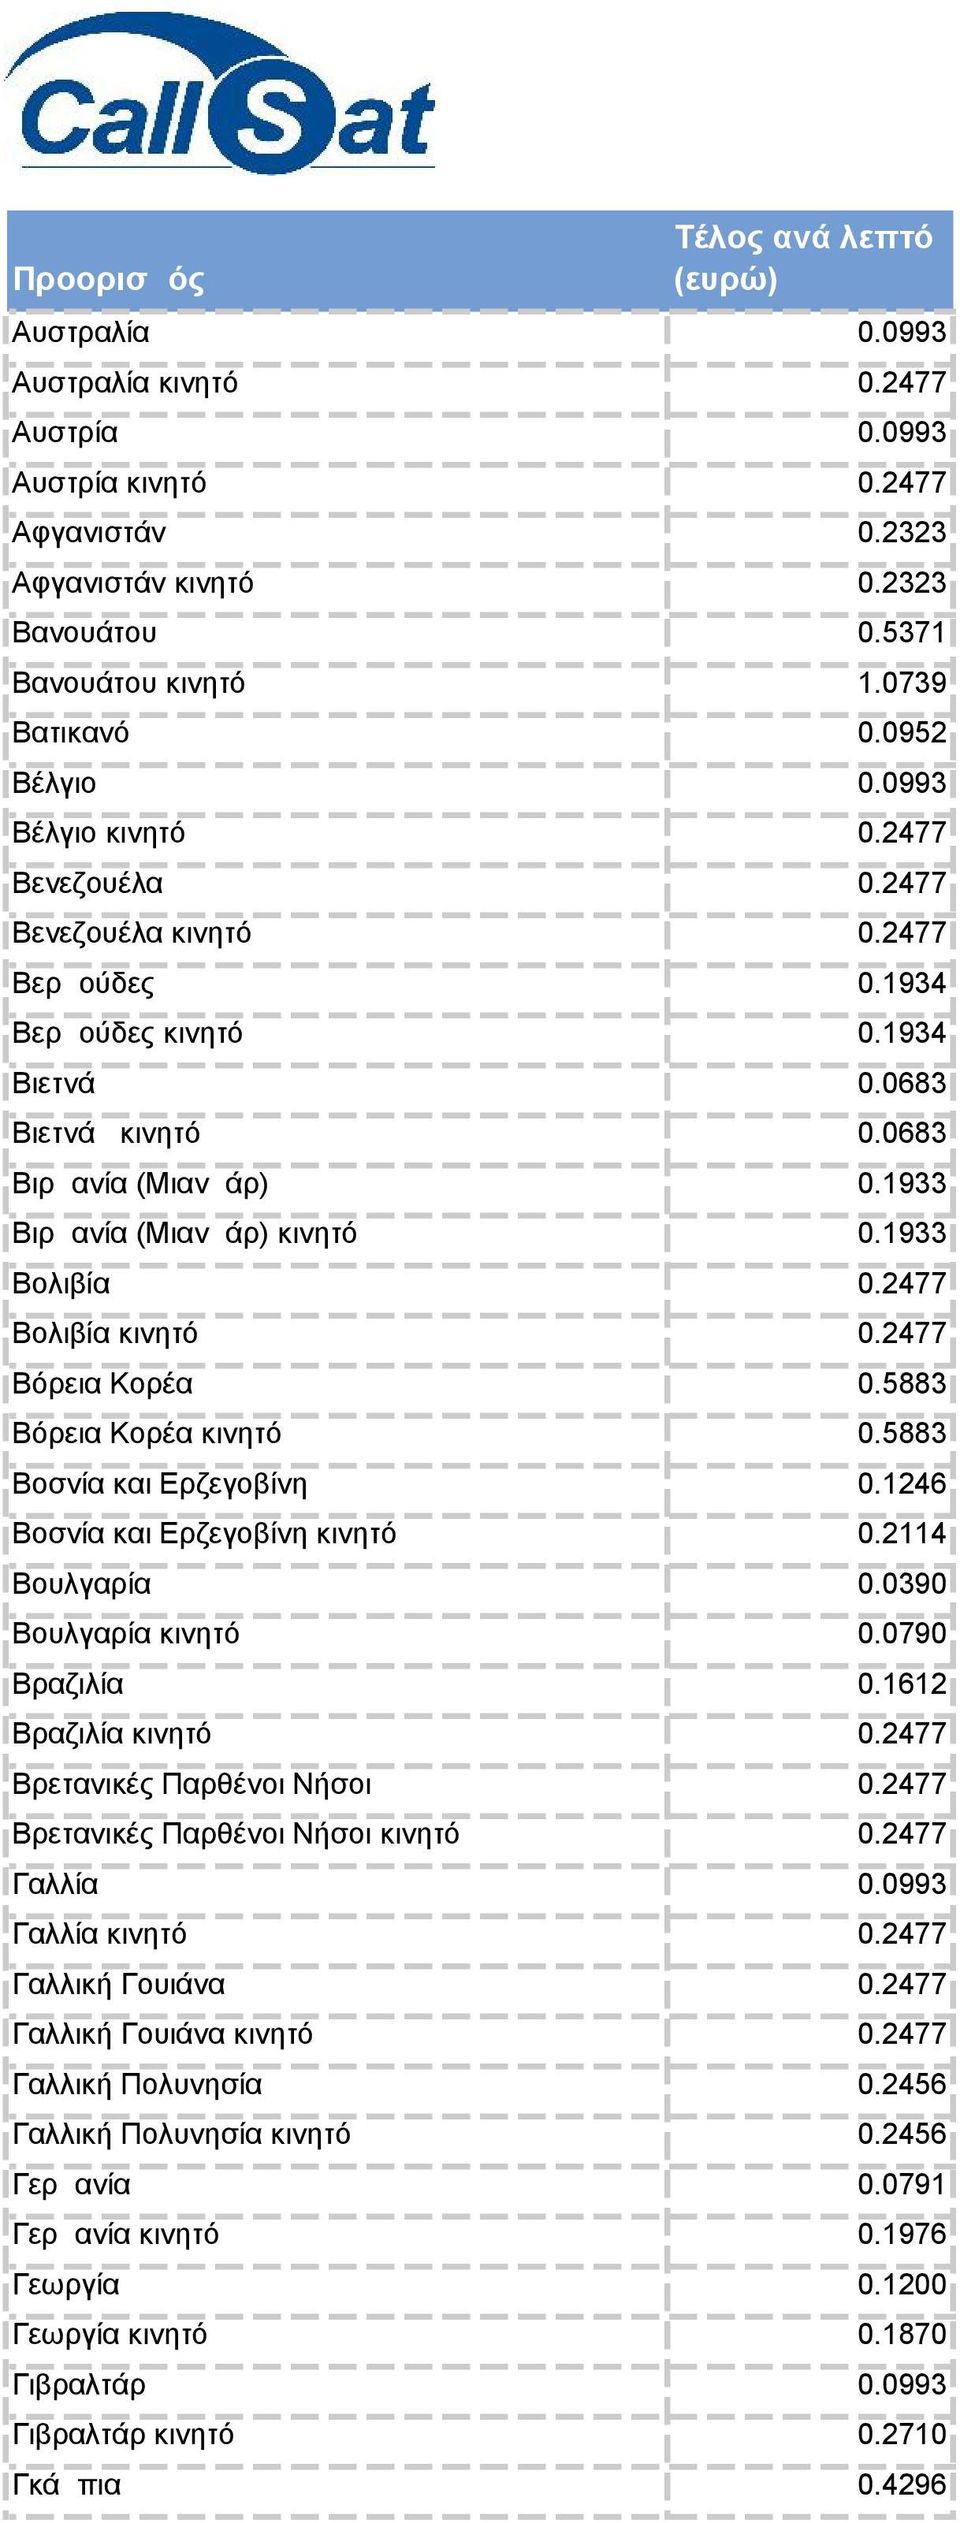 1933 Βιρμανία (Μιανμάρ) κινητό 0.1933 Βολιβία 0.2477 Βολιβία κινητό 0.2477 Βόρεια Κορέα 0.5883 Βόρεια Κορέα κινητό 0.5883 Βοσνία και Ερζεγοβίνη 0.1246 Βοσνία και Ερζεγοβίνη κινητό 0.2114 Βουλγαρία 0.